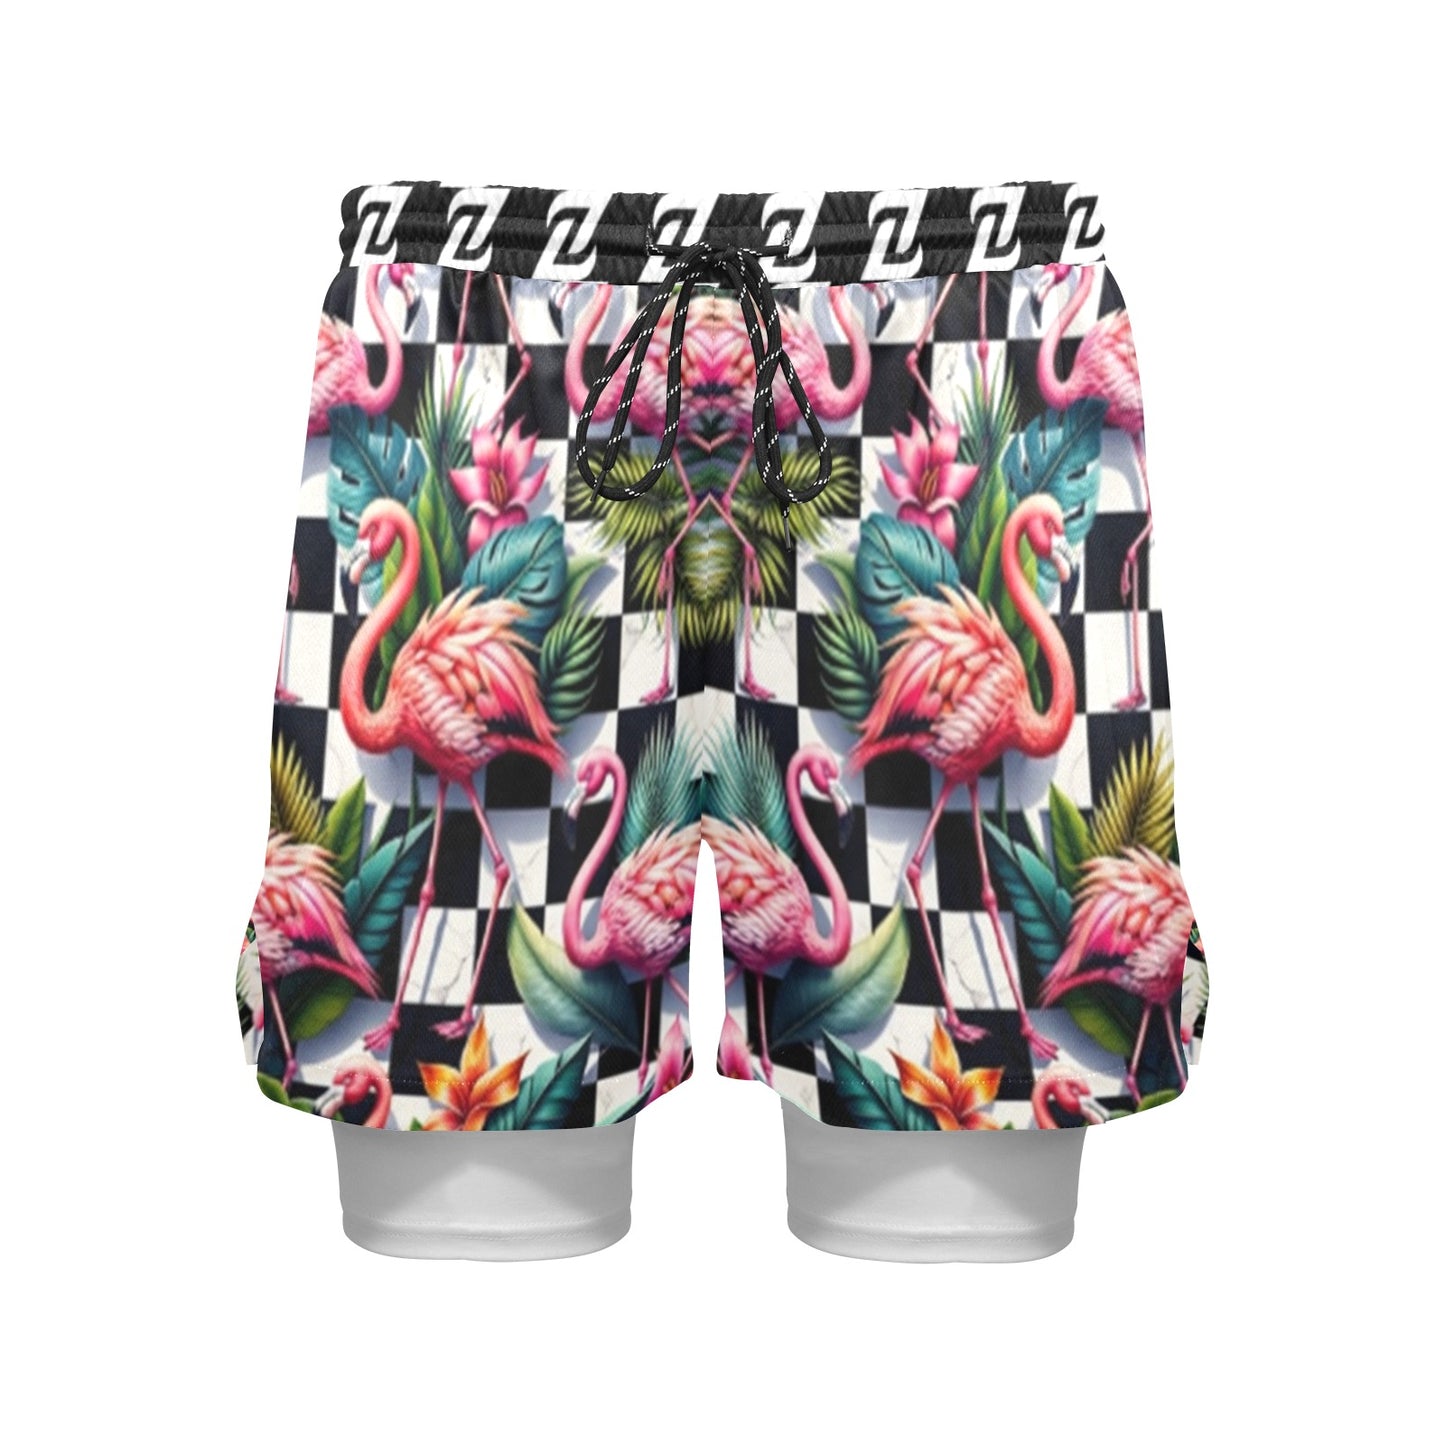 Zen Shorts with Liner - Flamingo